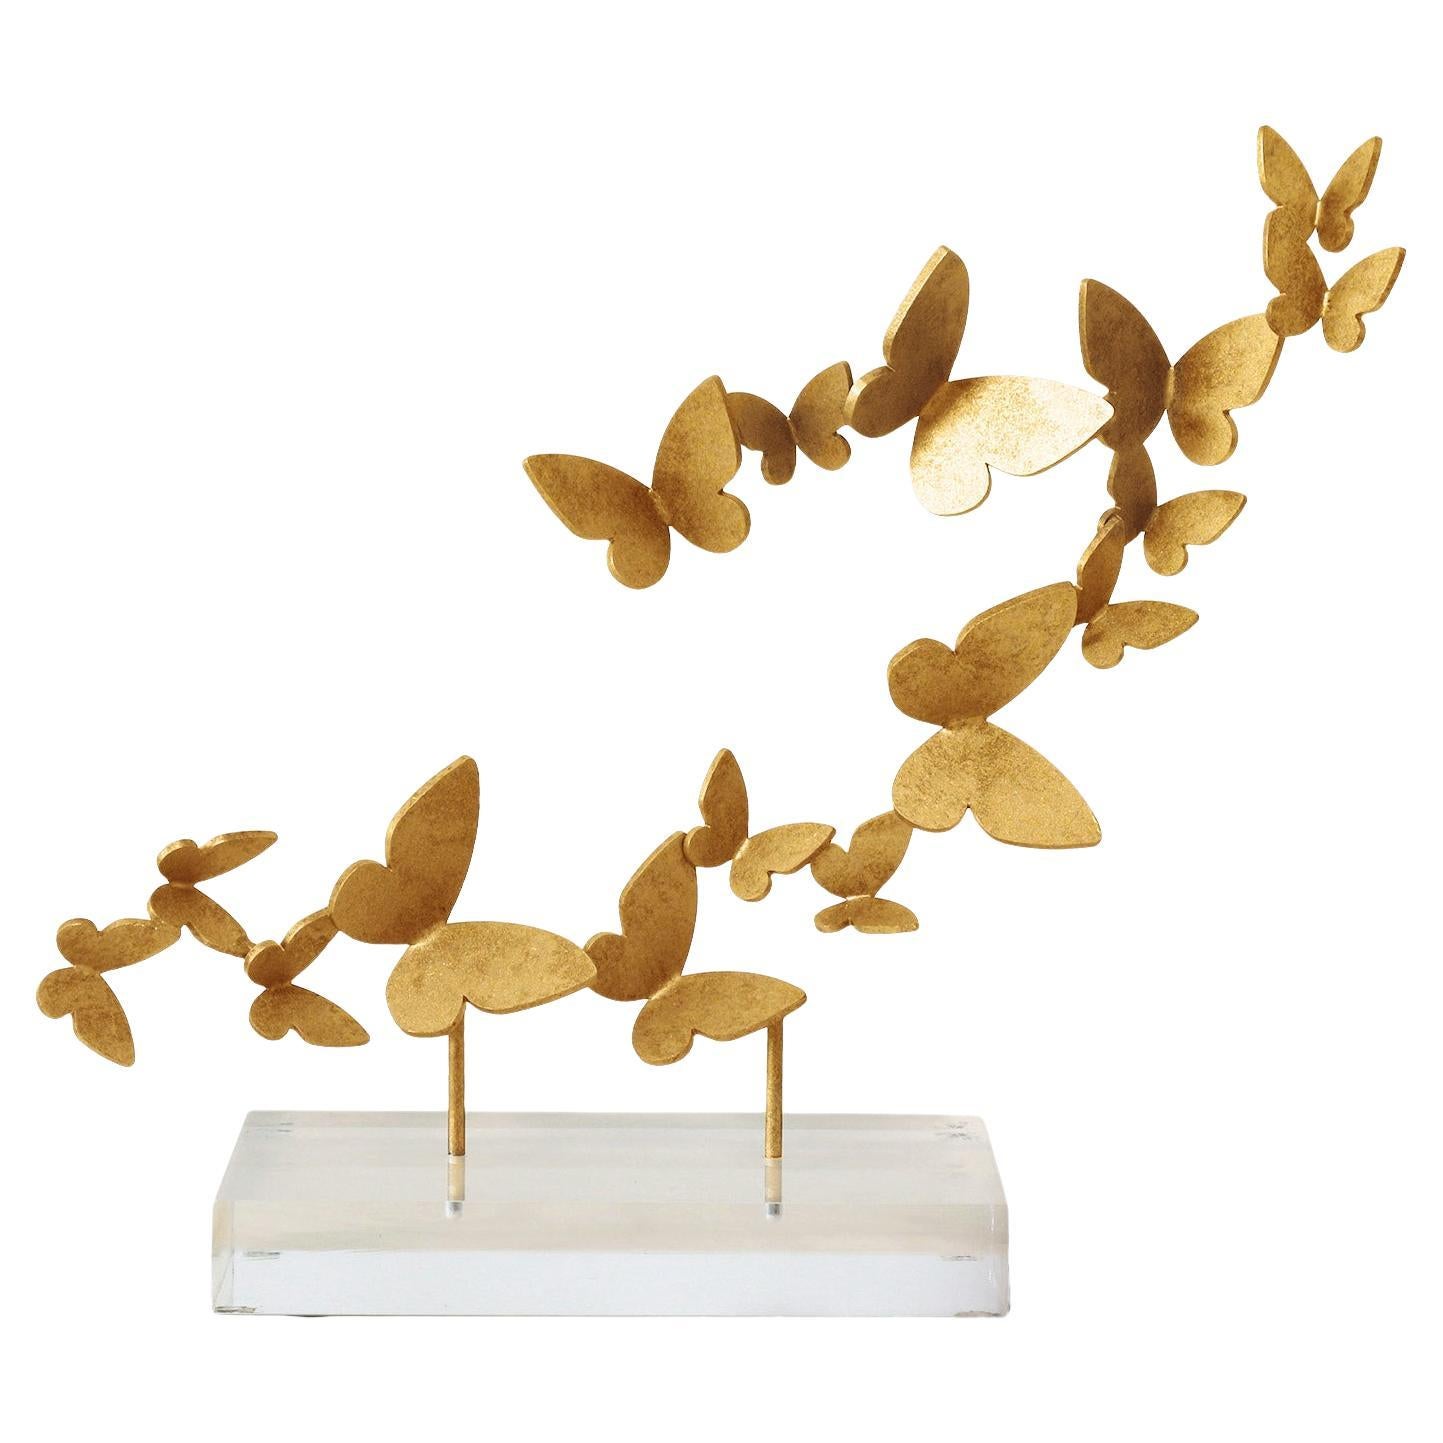 Accessoire de table papillons sur acrylique en or brillant